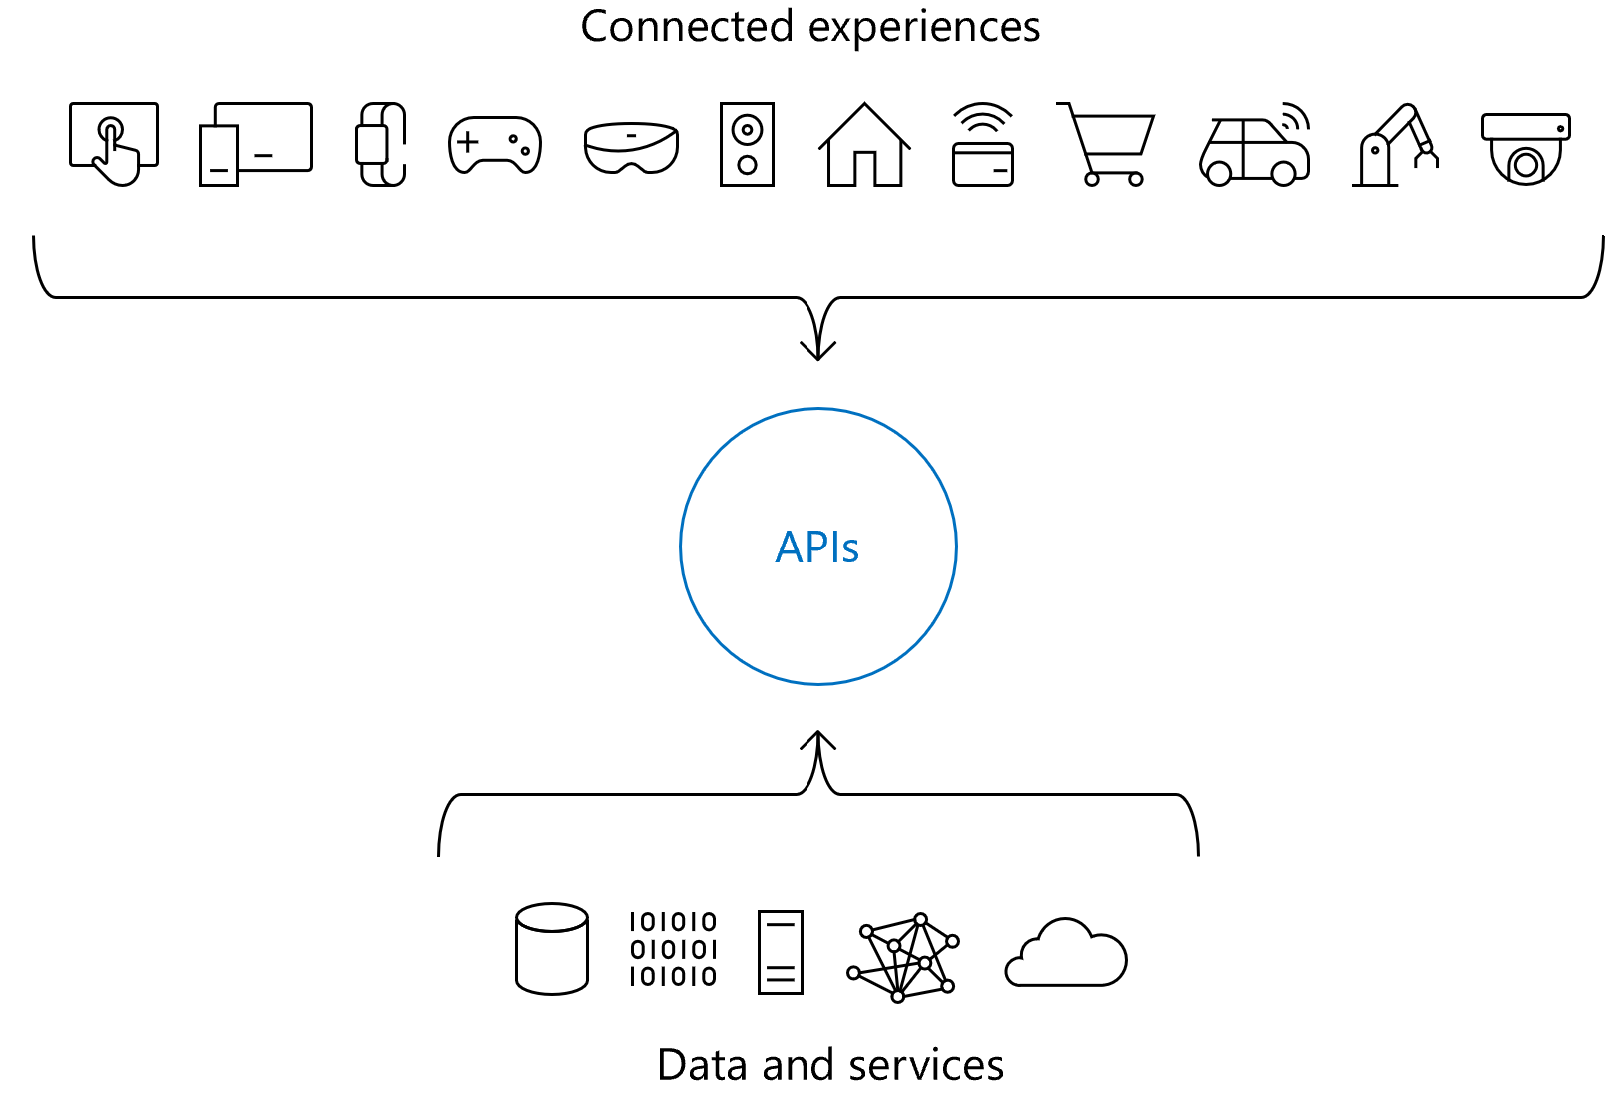 Diagrama mostrando a função das APIs nas experiências conectadas.